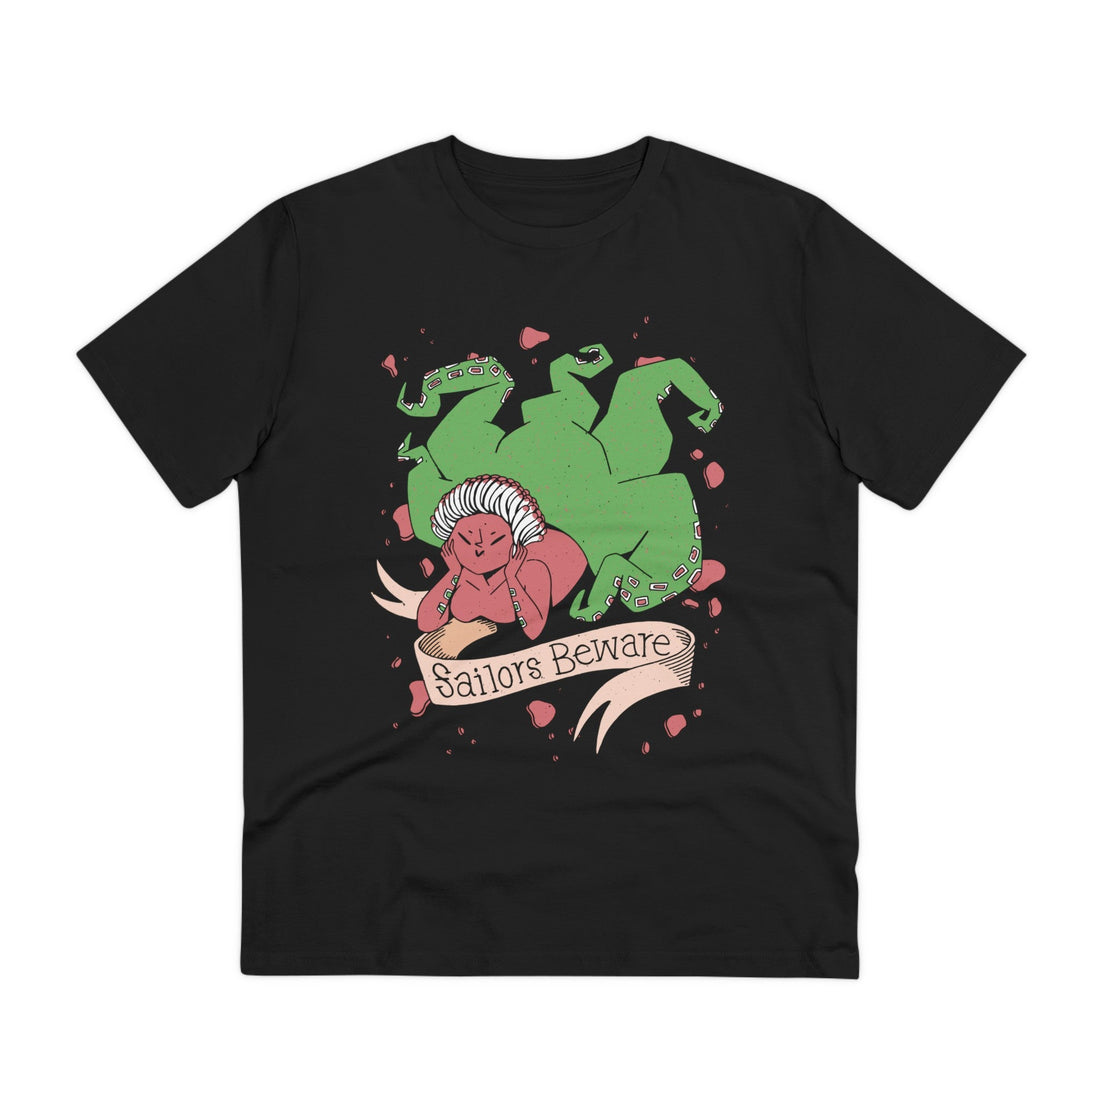 Printify T-Shirt Black / 2XS Sailors Beware - Creepy Mermaids - Front Design